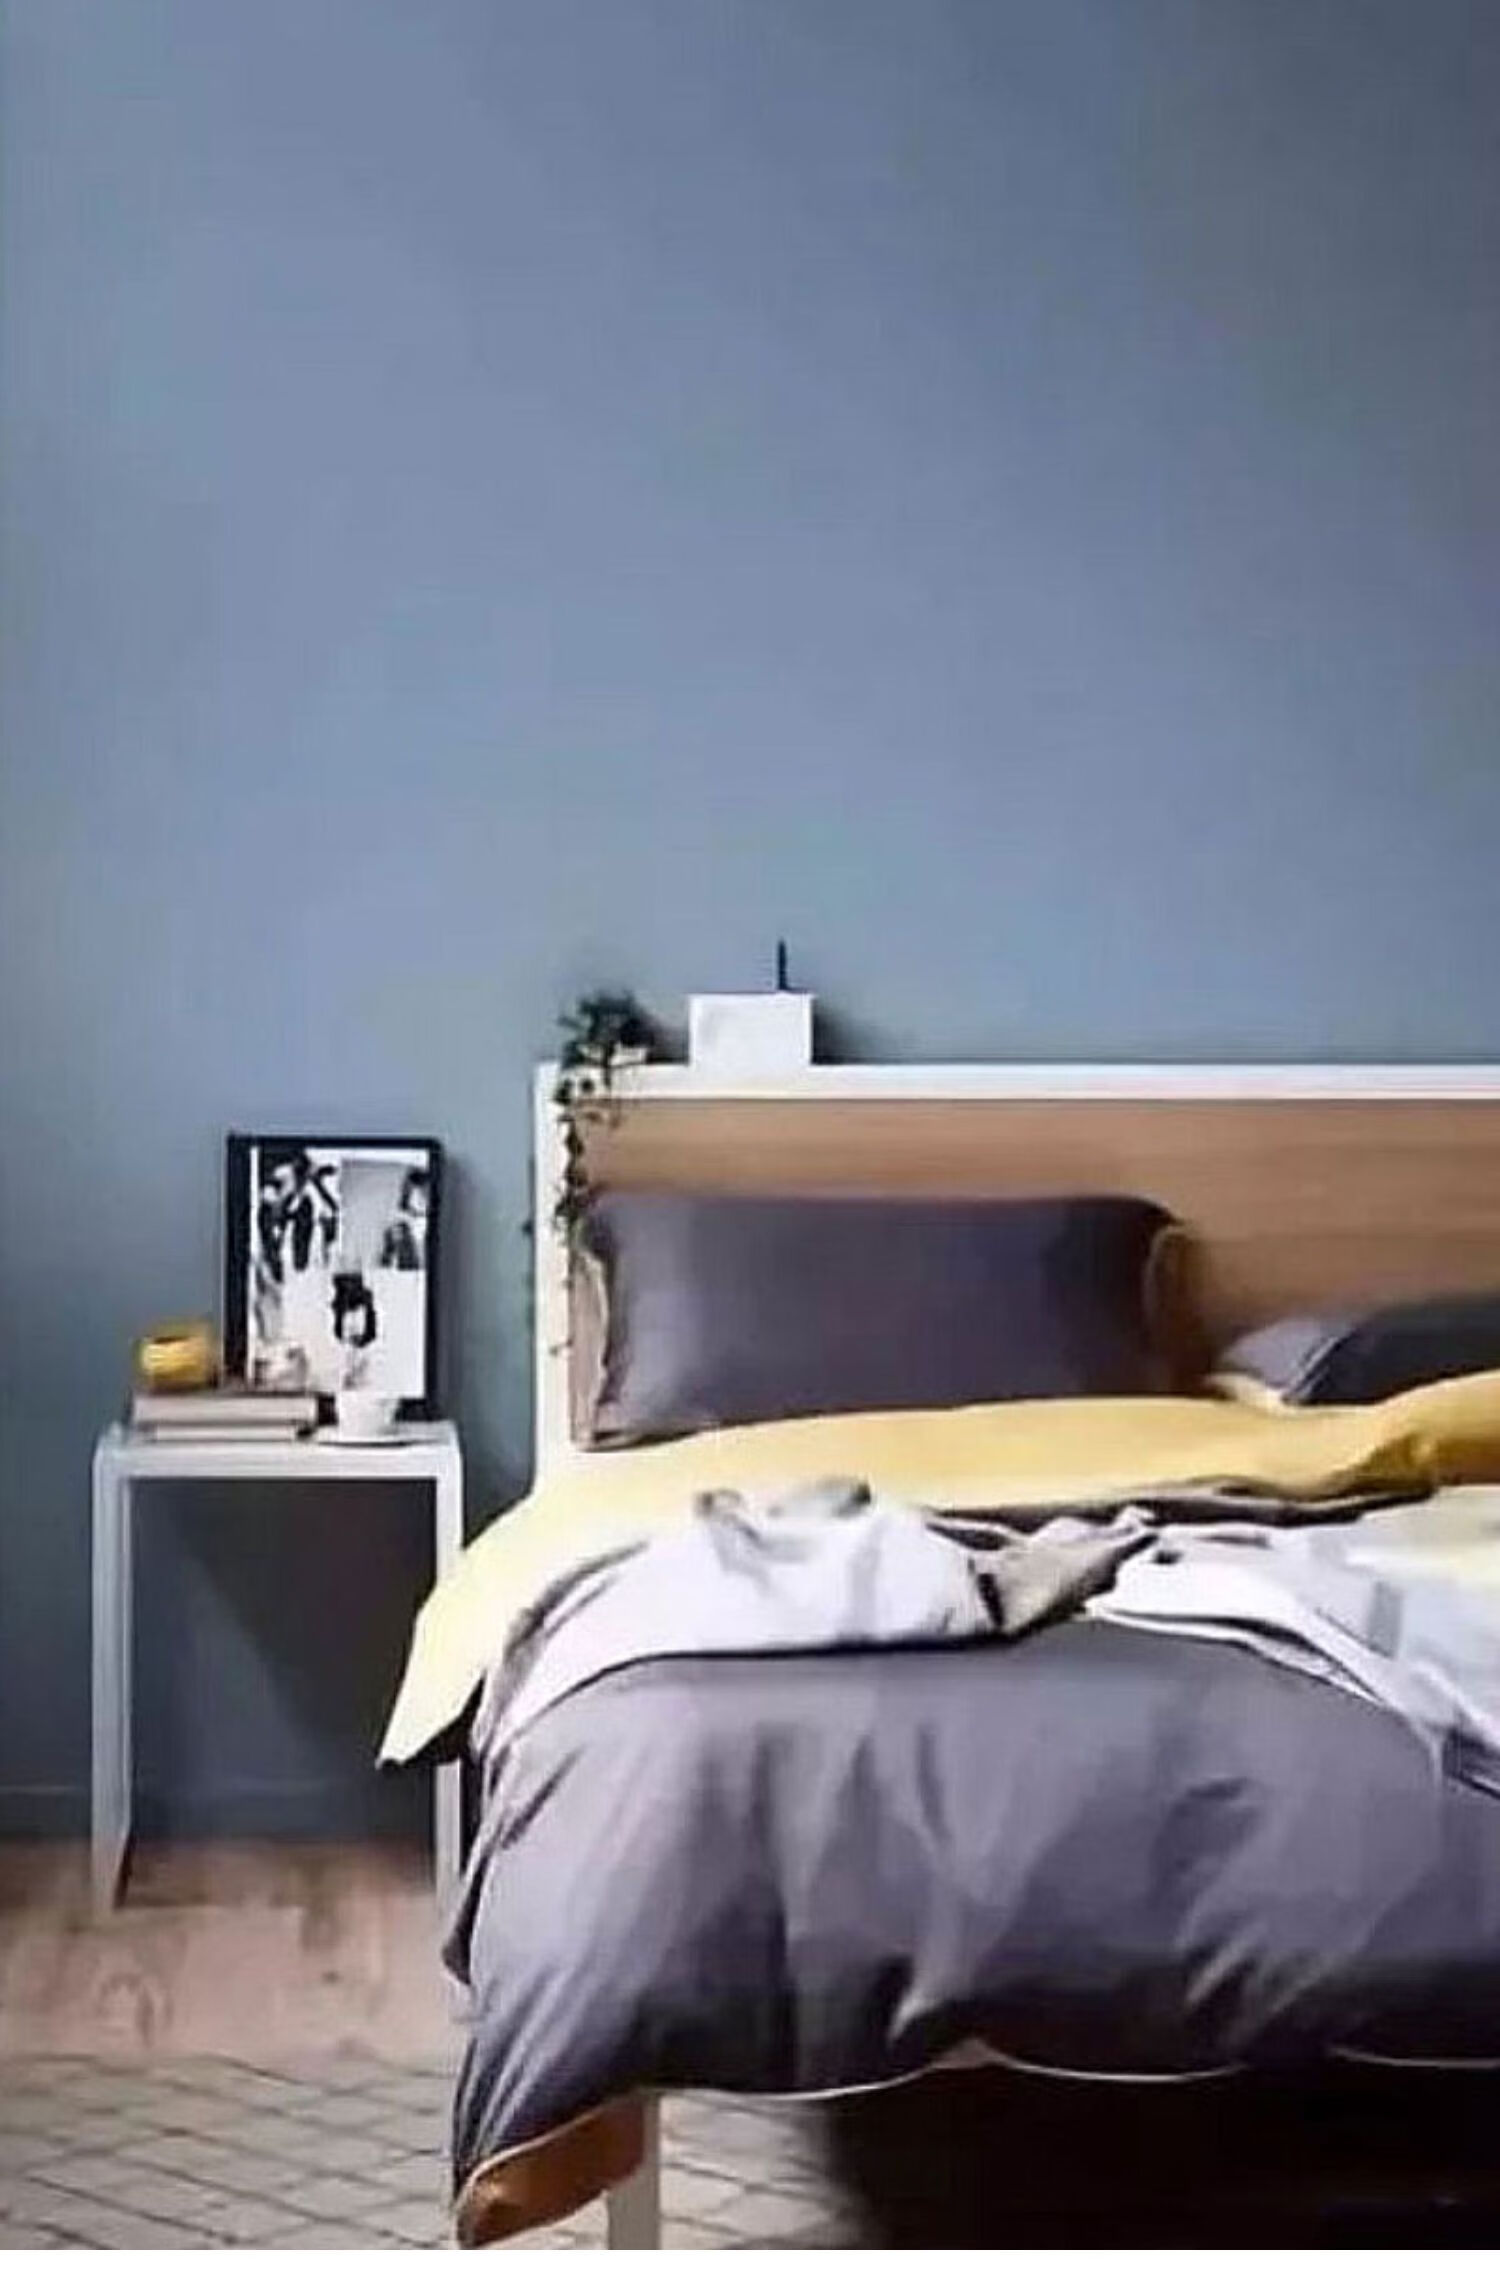 乳胶漆室内墙面漆墙漆雾霾蓝浅蓝色淡蓝色灰蓝客厅电视背景墙油漆